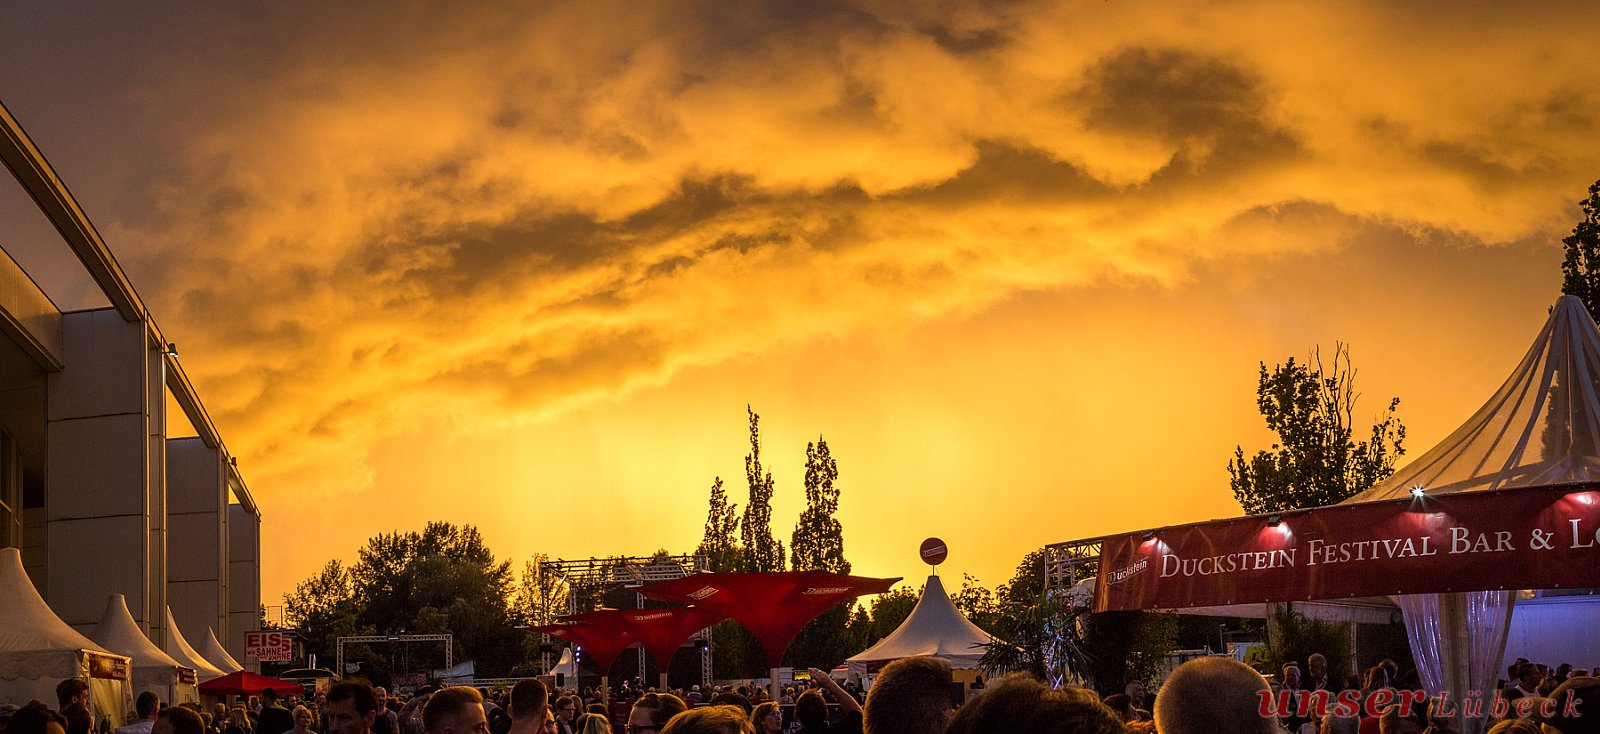 Himmel über dem Duckstein Festival kurz vor einem kleinen Regenschauer zur Goldenen Stunde - Die schönsten Fotos von unseren Lesern 2017